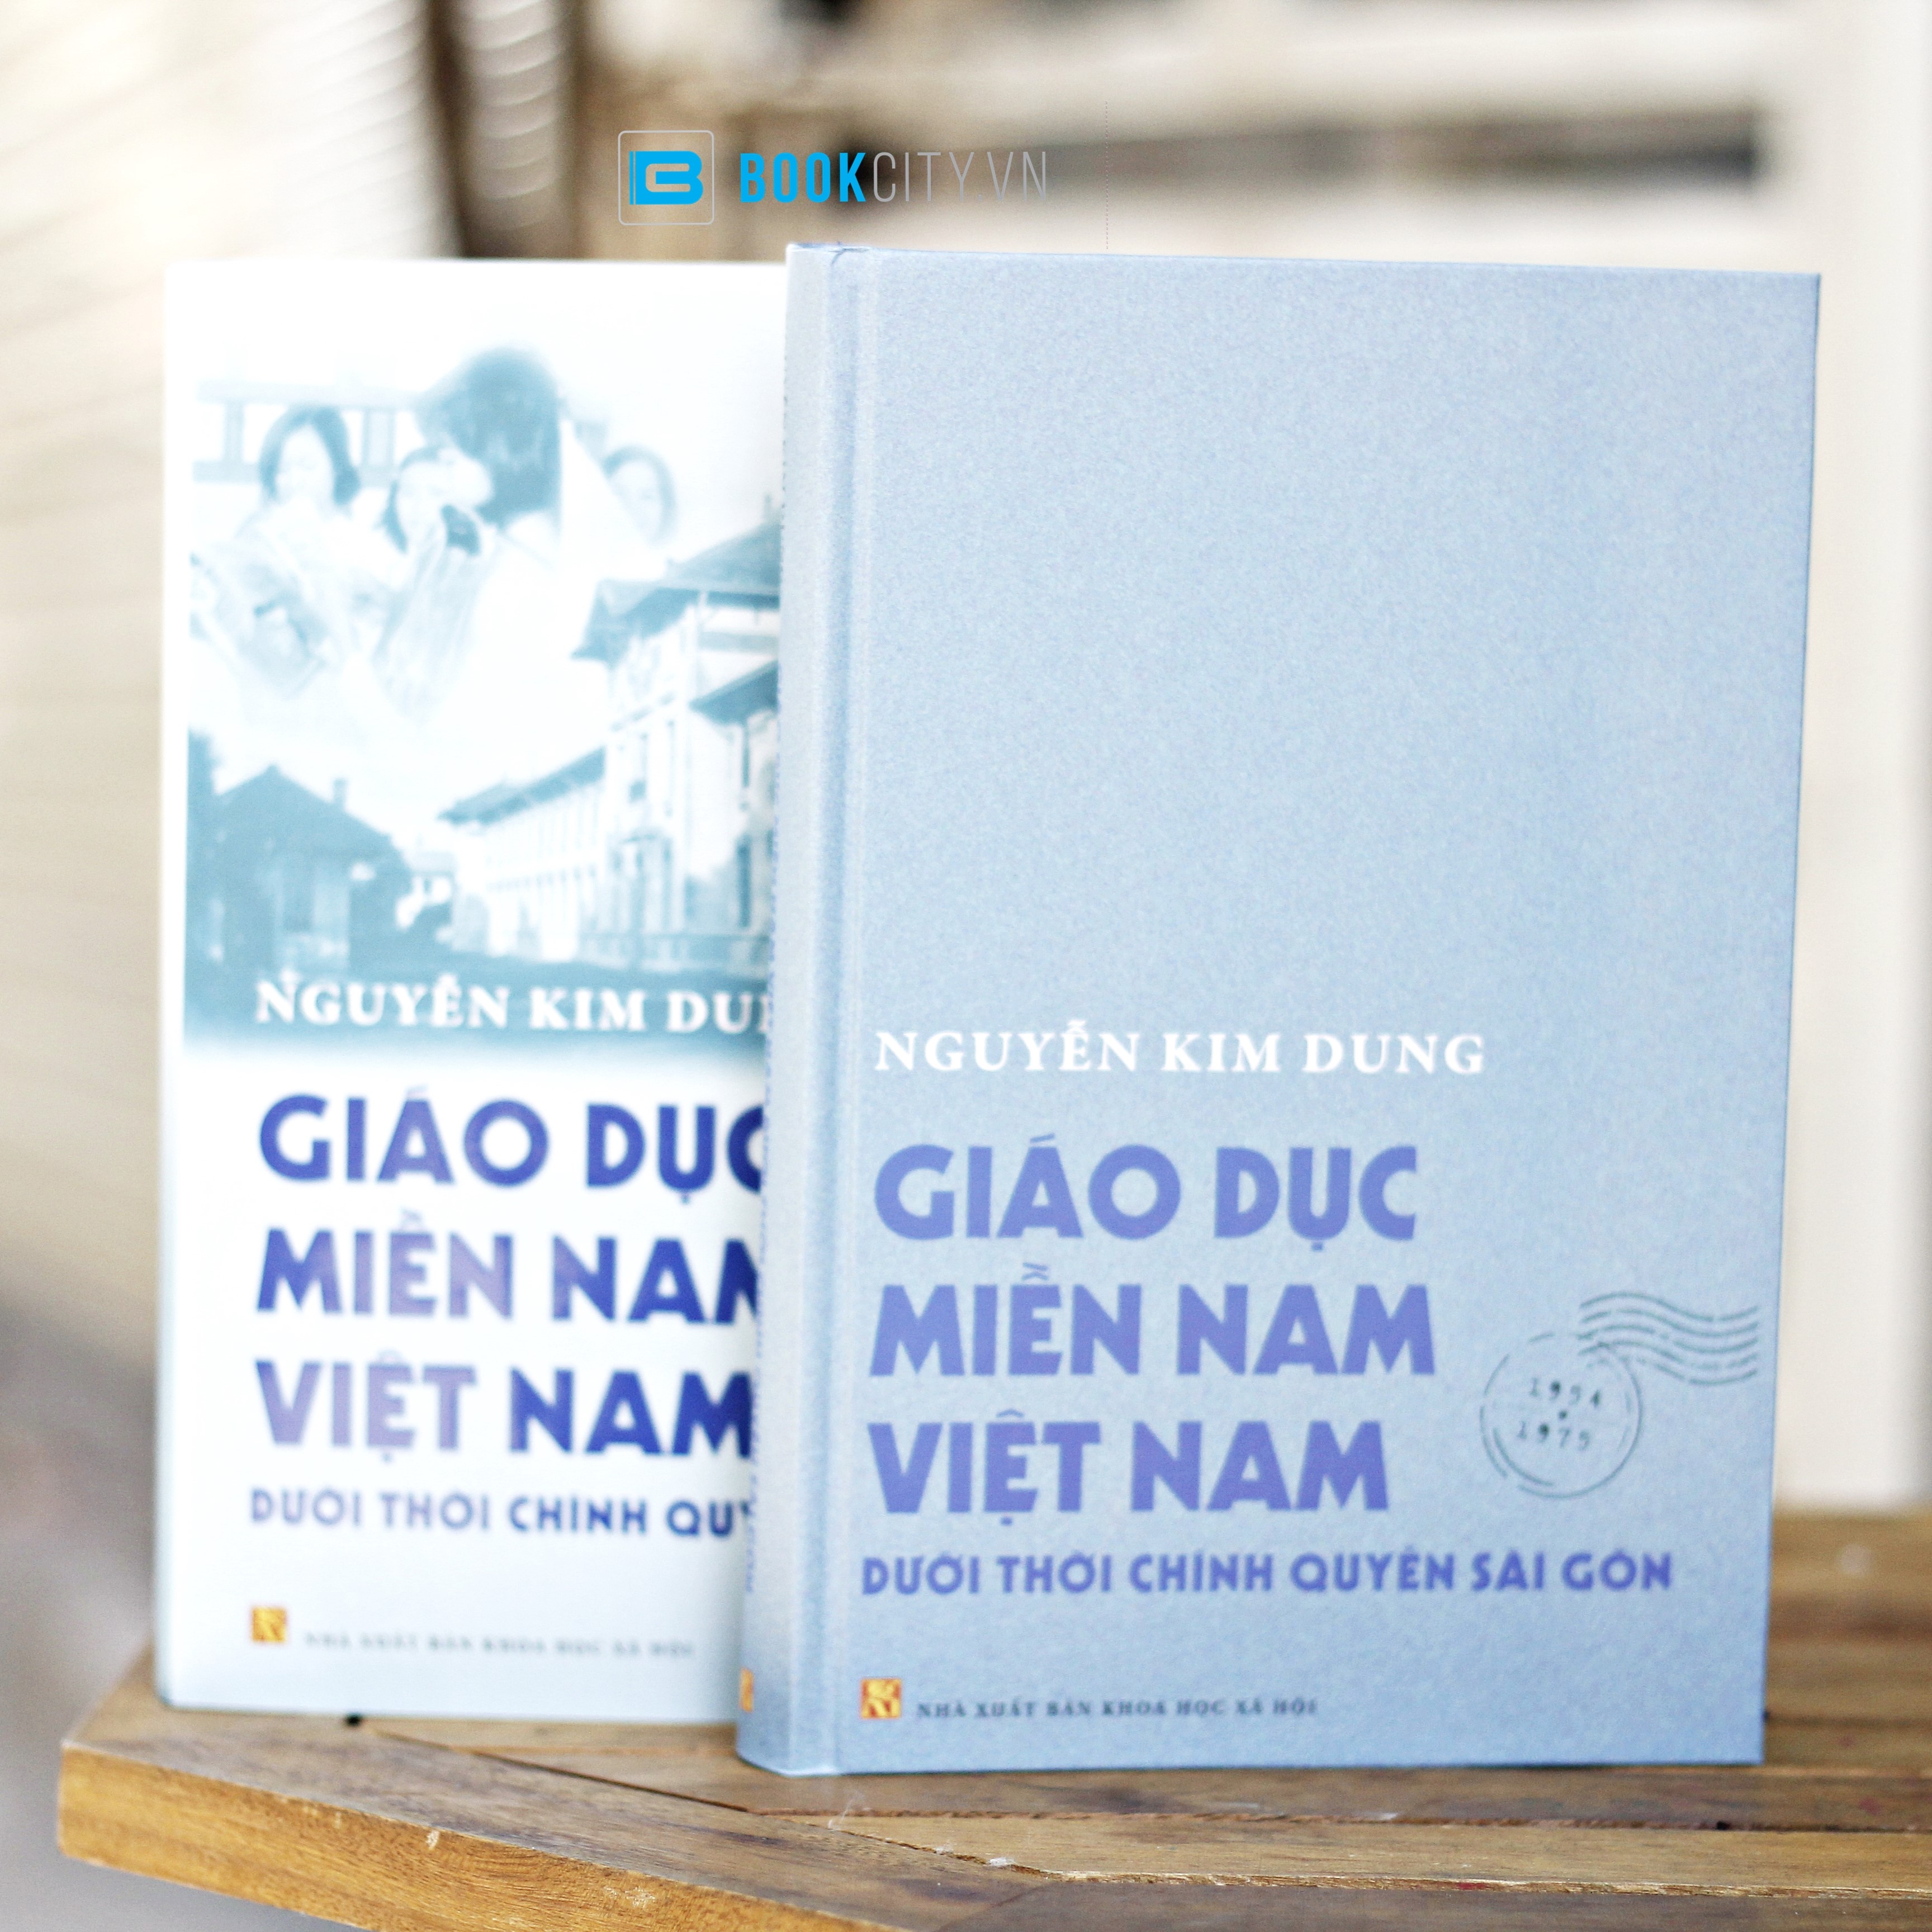 Giáo Dục Miền Nam Việt Nam Dưới Thời Chính Quyền Sài Gòn - Bookcity